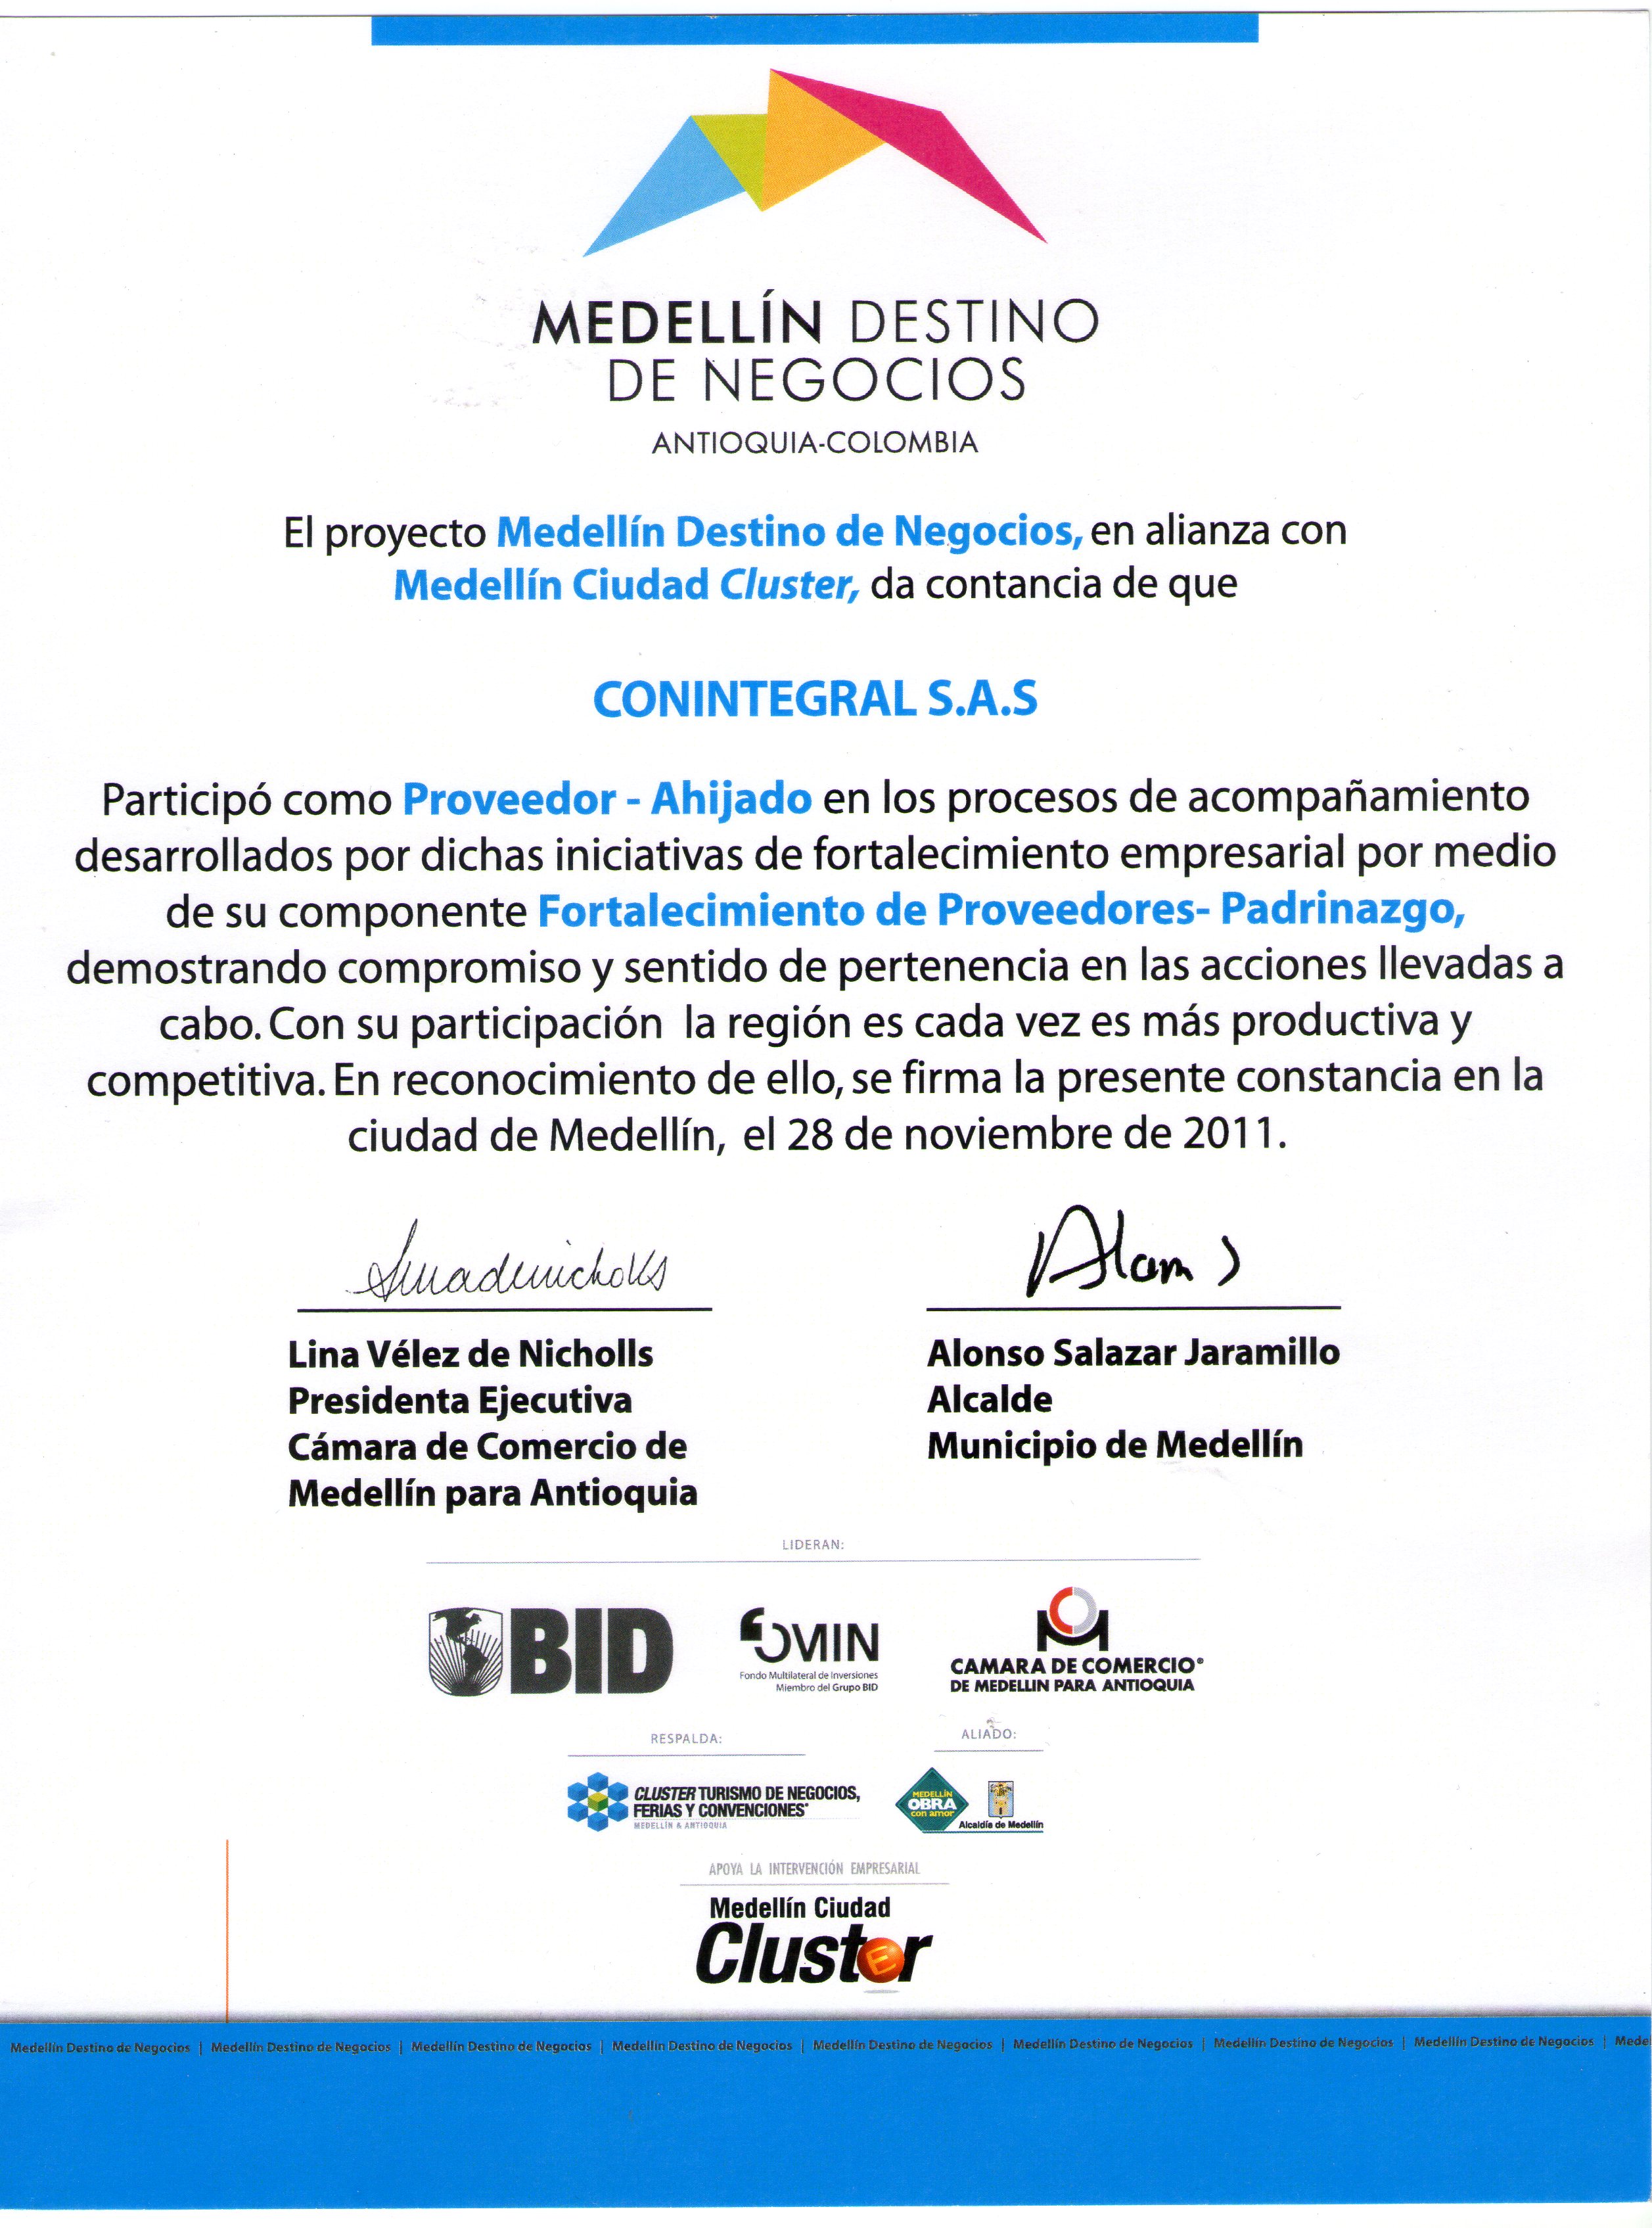 Conintegral, participante del proyecto de fortalecimiento a proveedores – Cámara de Comercio de Medellín